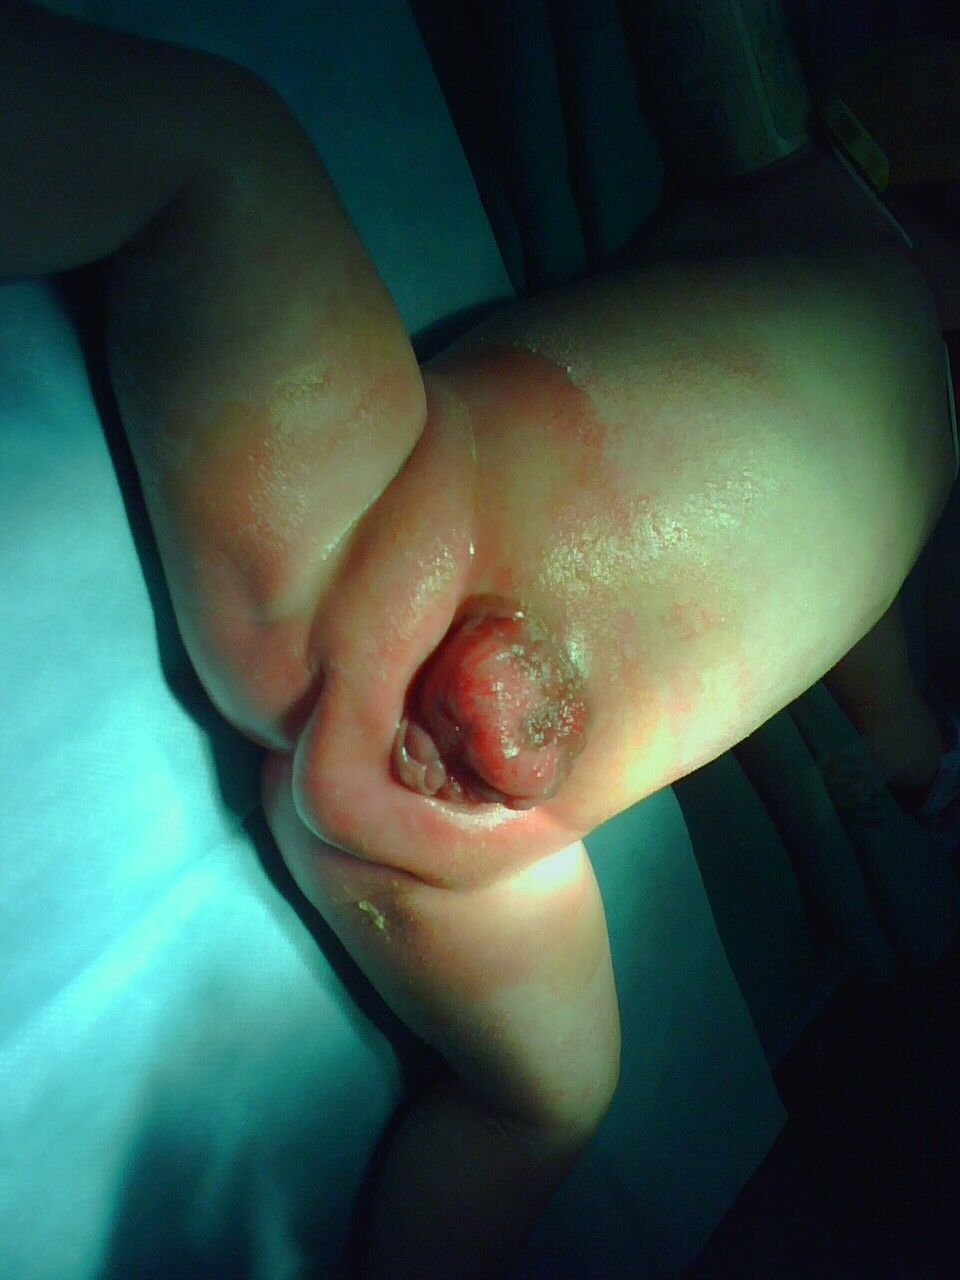 下图为一男性尿道上裂合并膀胱外翻,即为完全性的尿道上裂.